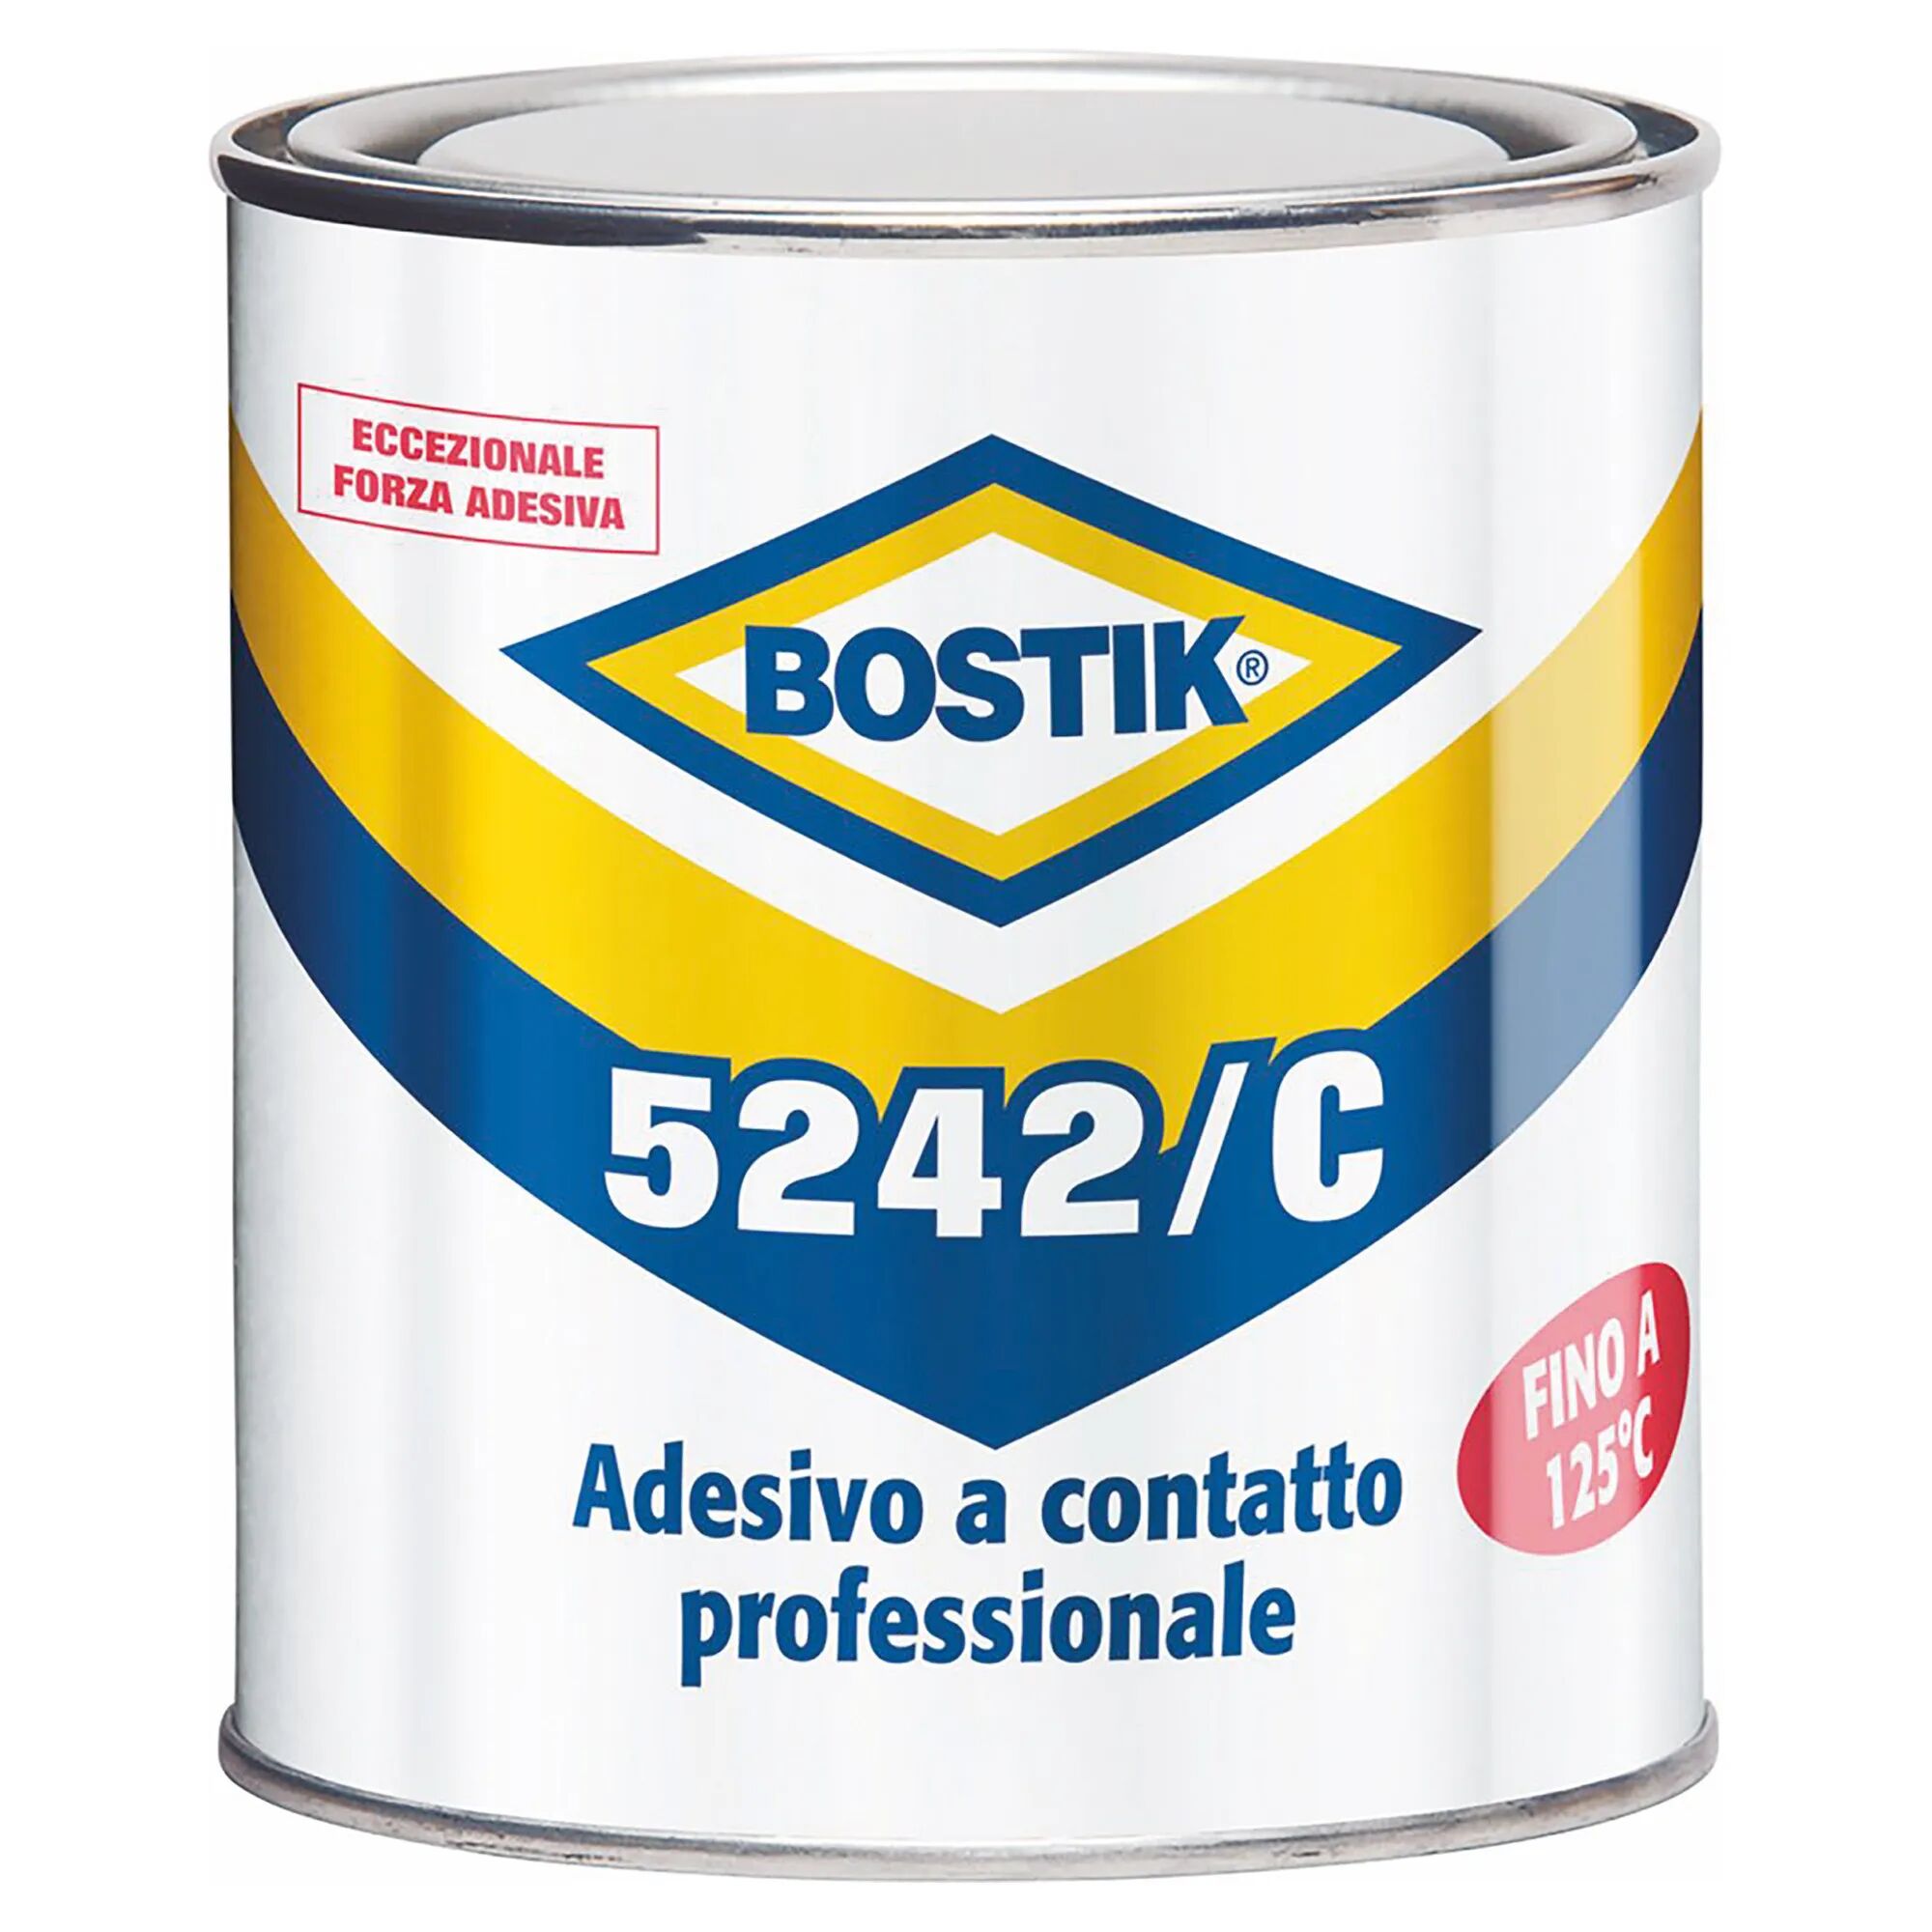 Bostik COLLA A CONTATTO  5242/C 0,4 l INCOLLA FORTE E PERMANENTE TERMORESISTENTE FINO A 125°